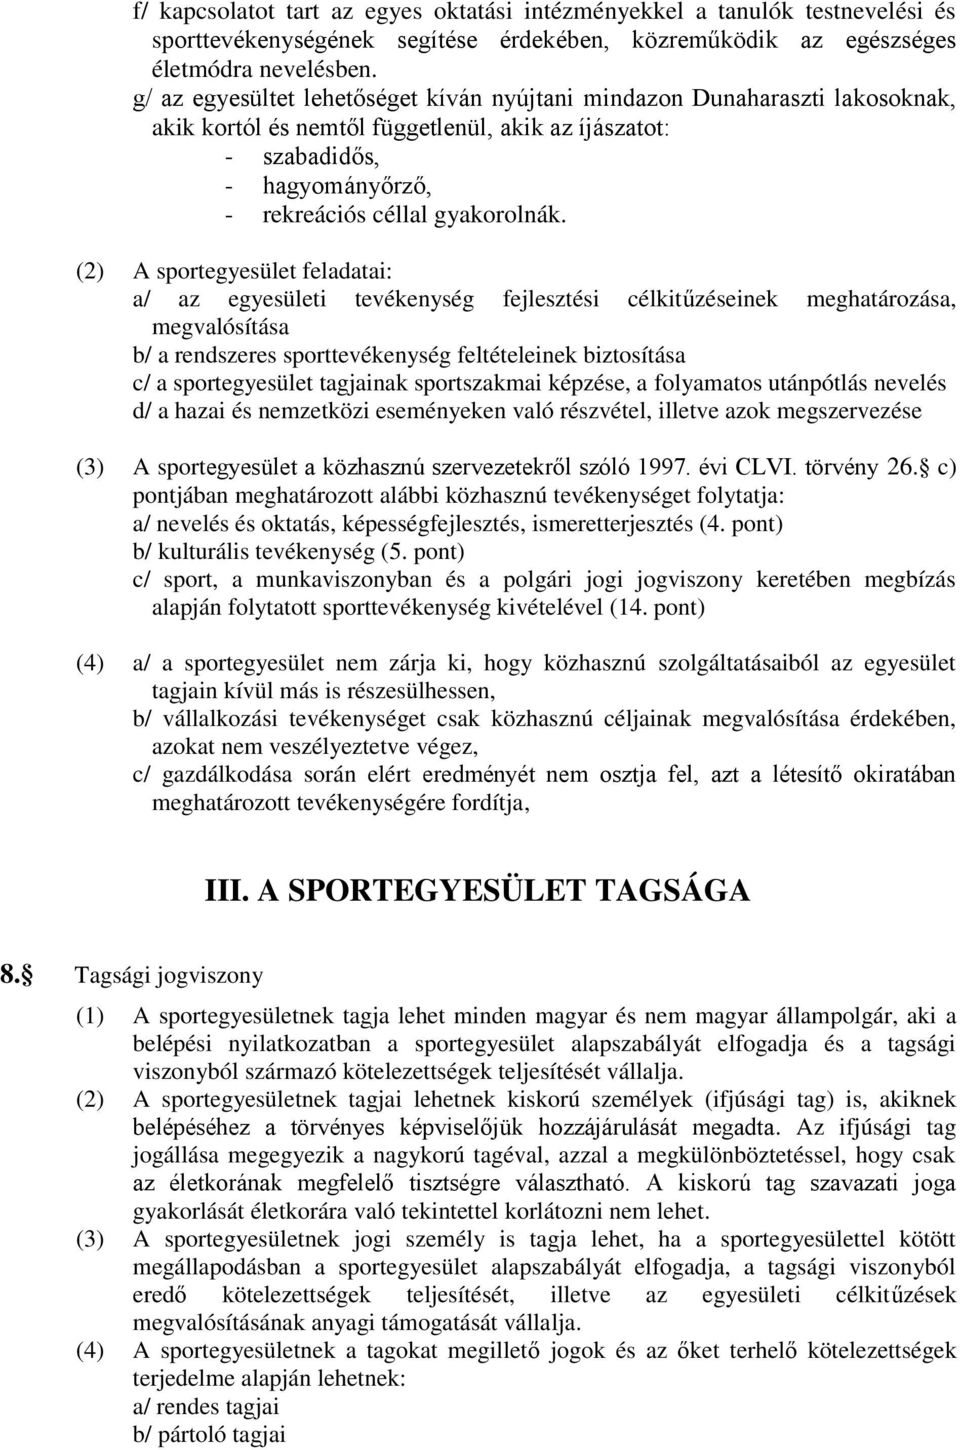 (2) A sportegyesület feladatai: a/ az egyesületi tevékenység fejlesztési célkitűzéseinek meghatározása, megvalósítása b/ a rendszeres sporttevékenység feltételeinek biztosítása c/ a sportegyesület